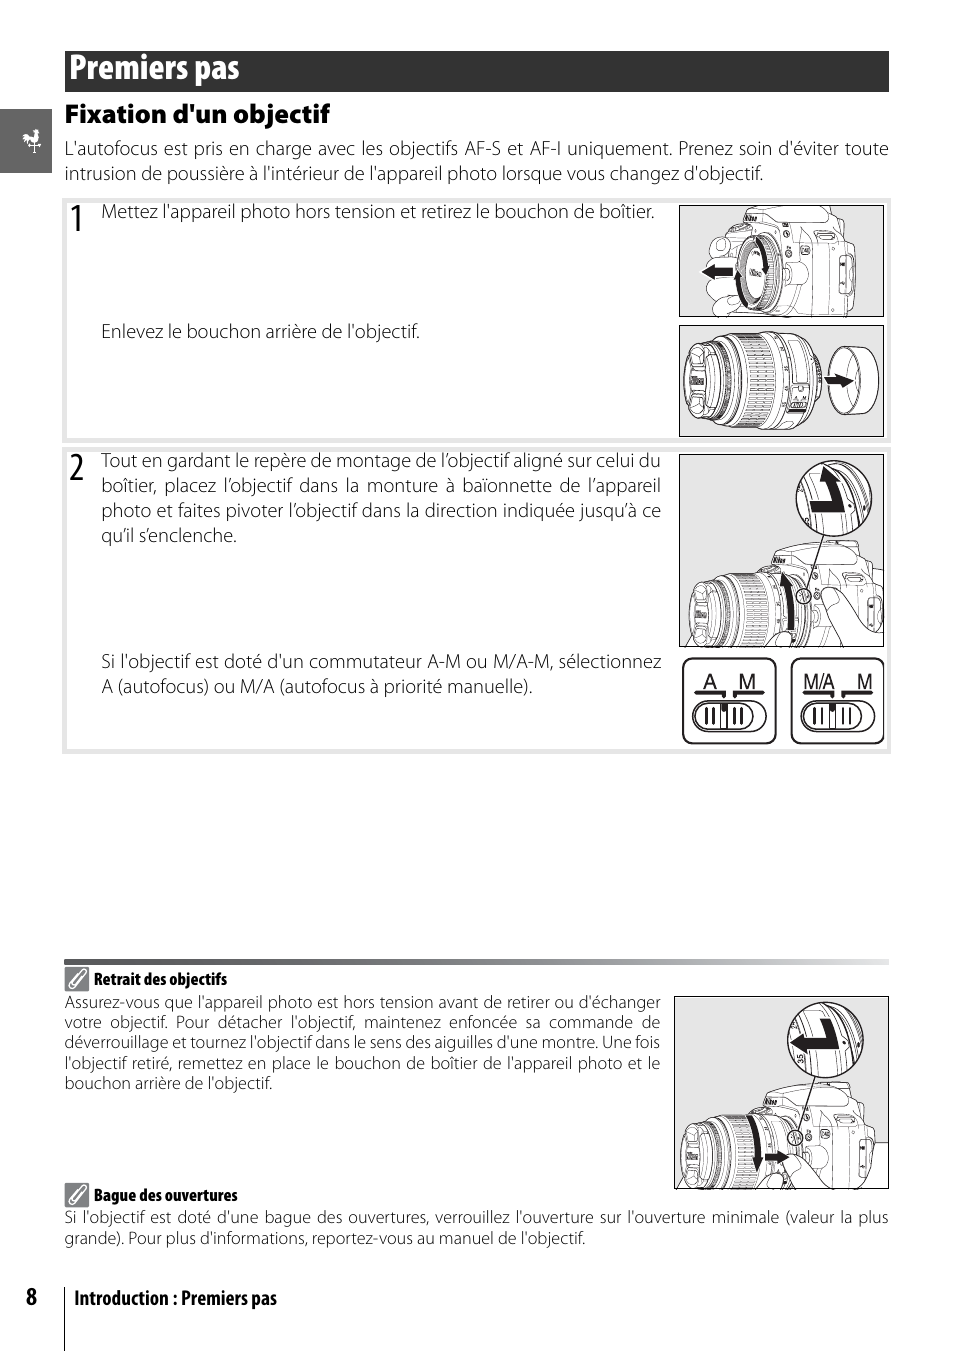 Premiers pas | Nikon D40 Manuel d'utilisation | Page 20 / 139